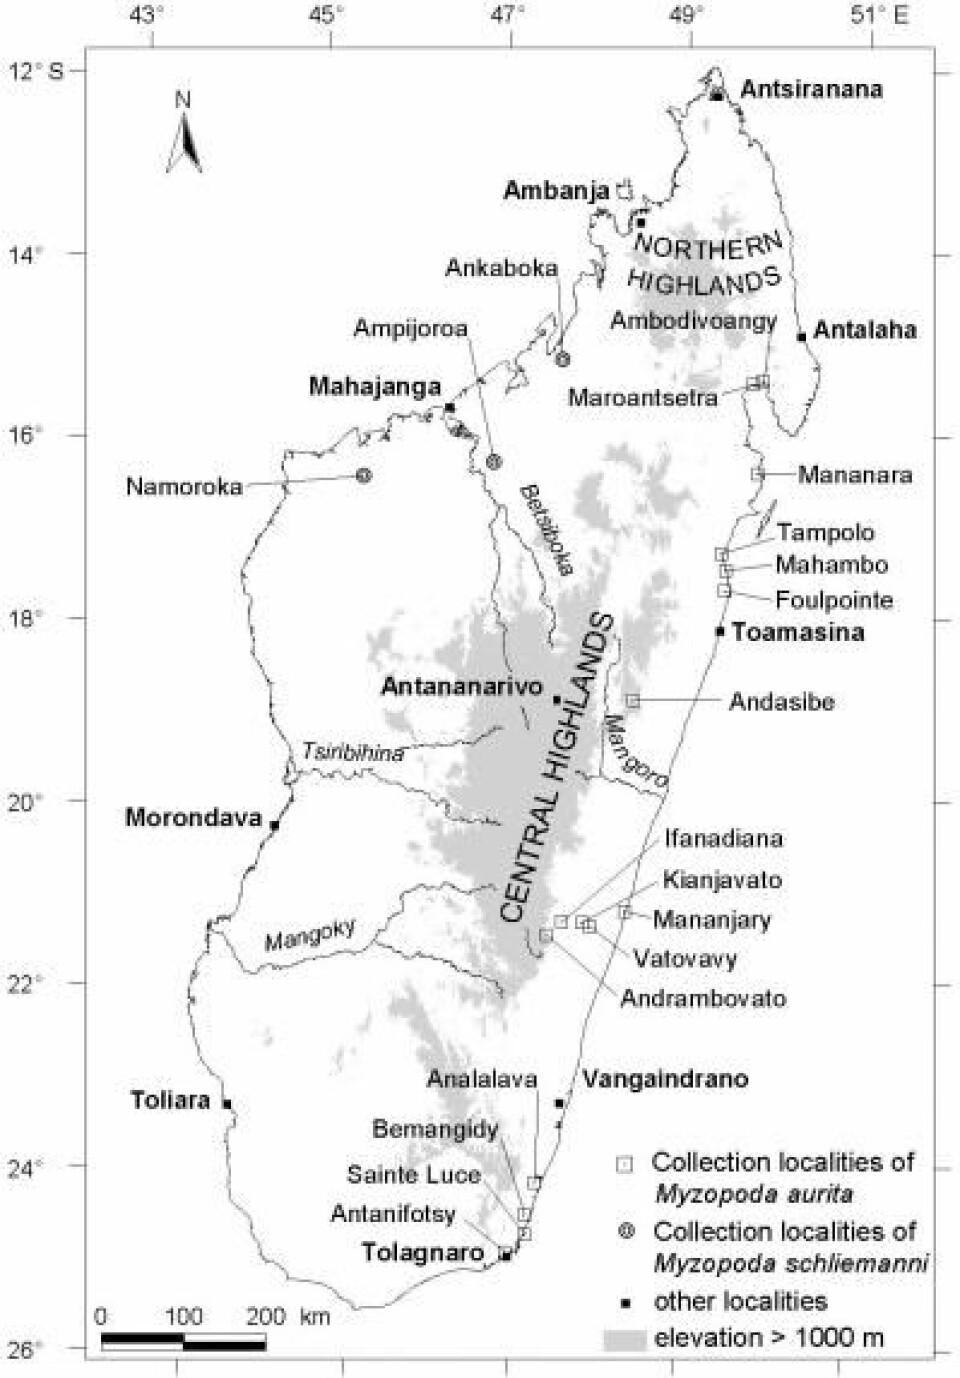 'Dette kartet over Madagaskar viser at den nye arten sugekopp-flaggermus bare finnes i de vestlige skogene på Madagaskar, mens den tidligere kjente arten, Myzopoda aurita, bare finnes i de fuktige østlige skogene.'